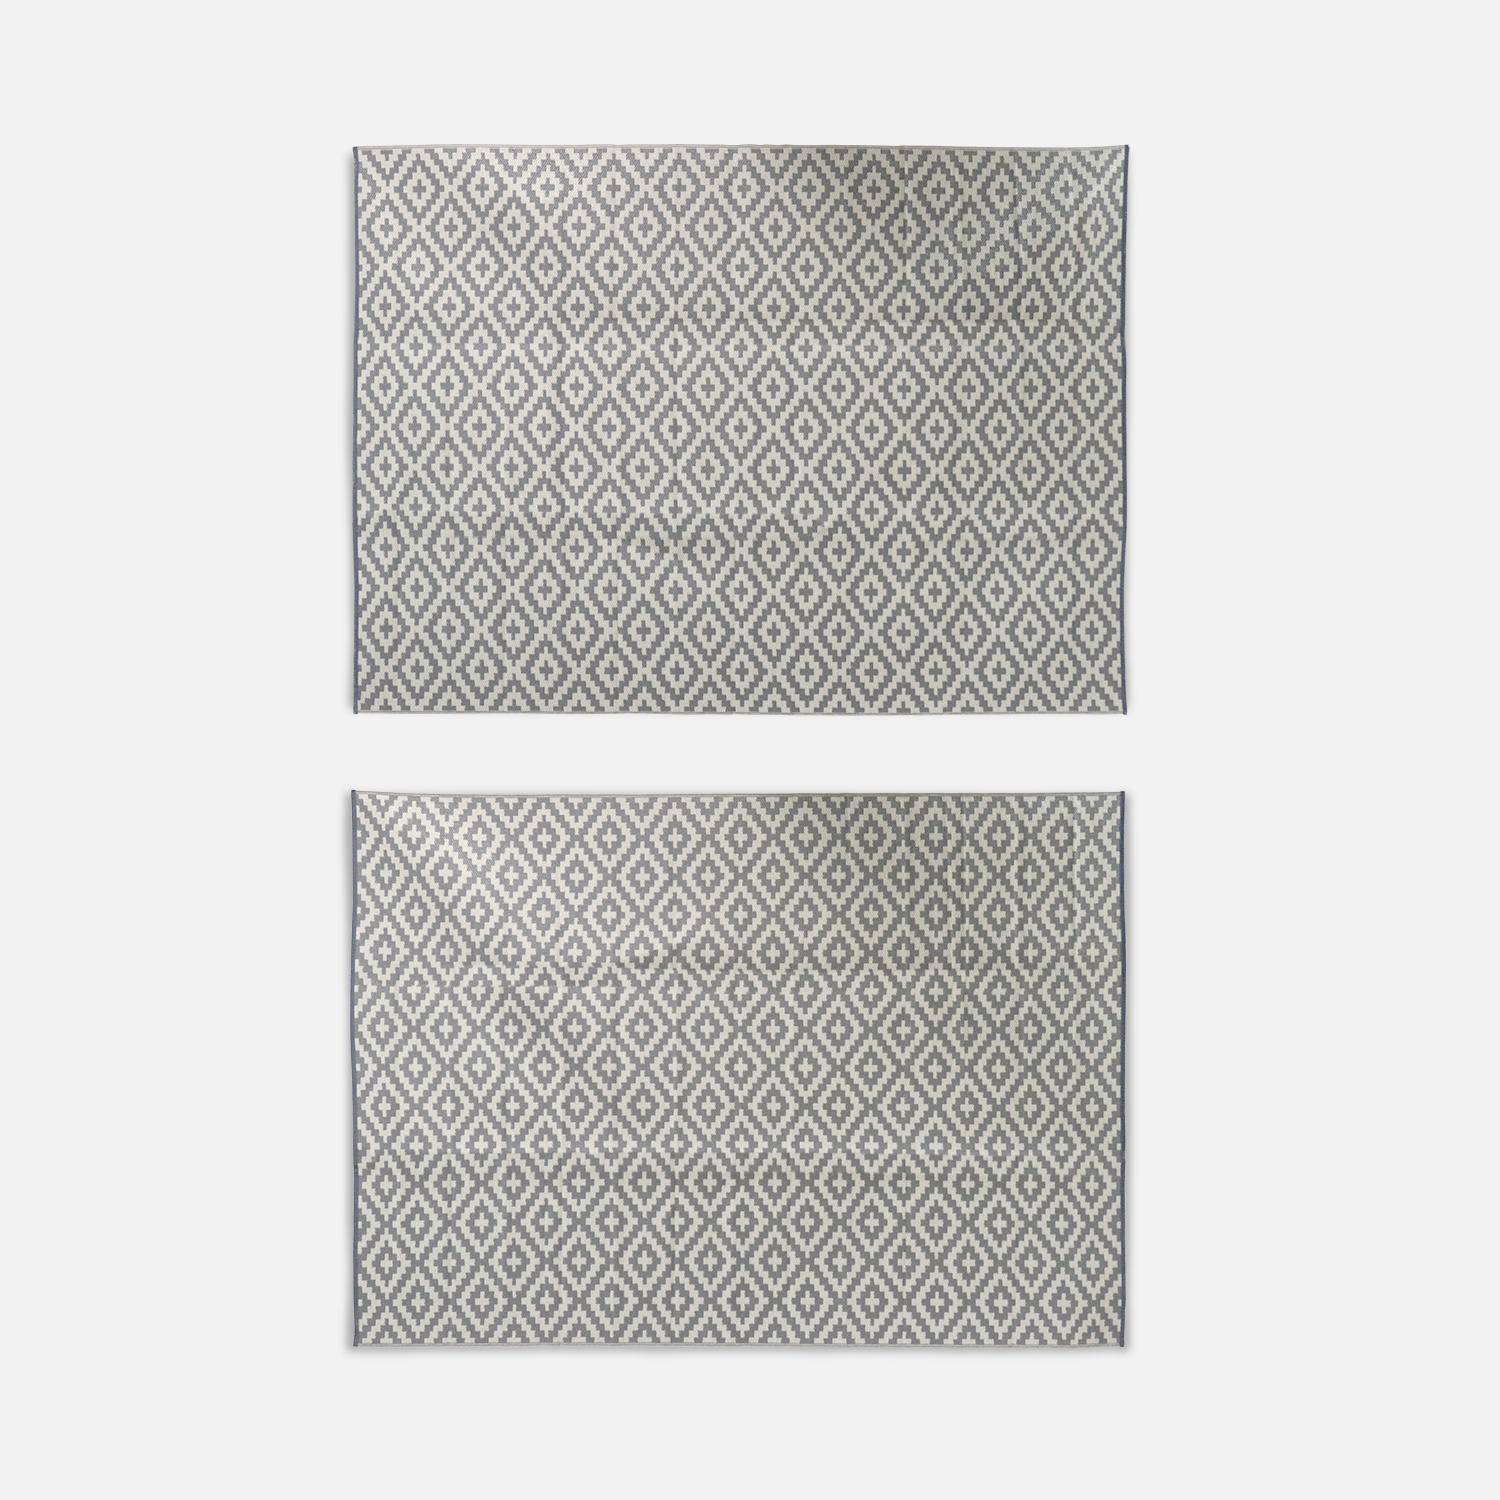 Tapete de exterior 270x360cm STOCKHOLM - Retangular, padrão de diamante caqui, jacquard, reversível, interior / exterior, Photo2